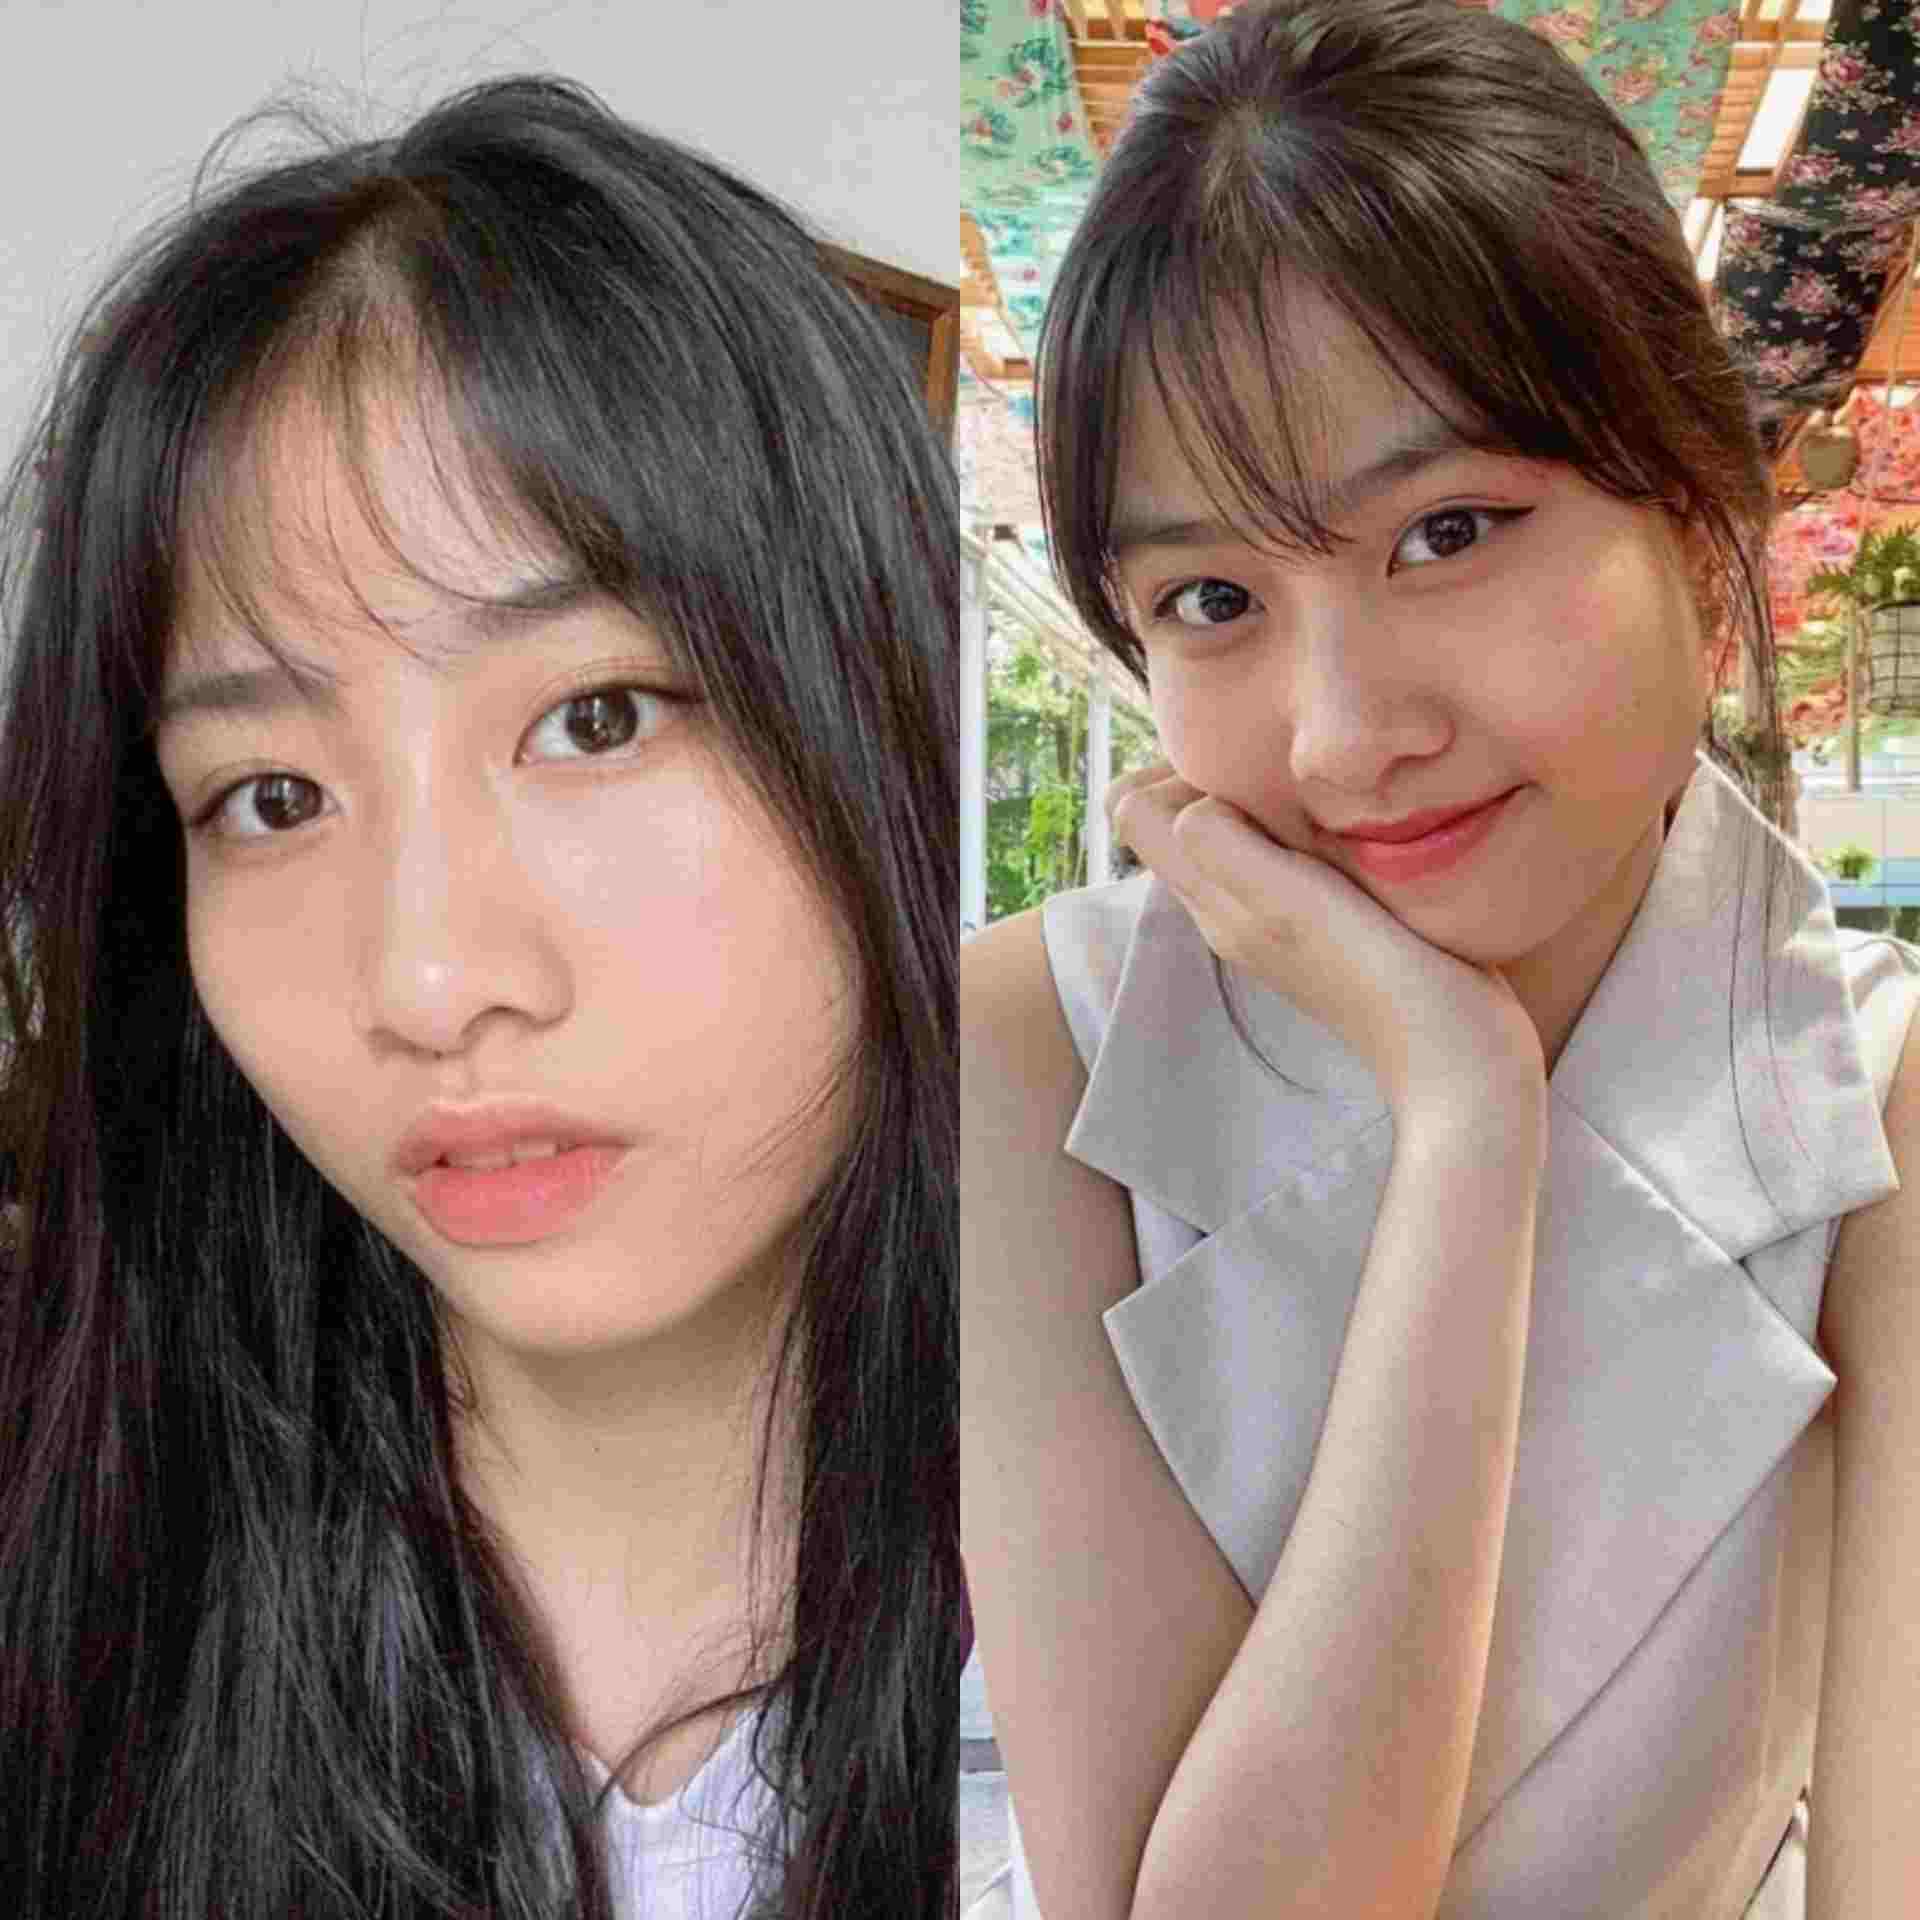 Biodata Mutiara Azzahra JKT48 Lengkap Umur dan Agama, Member JKT48 yang Mirip Momo Twice